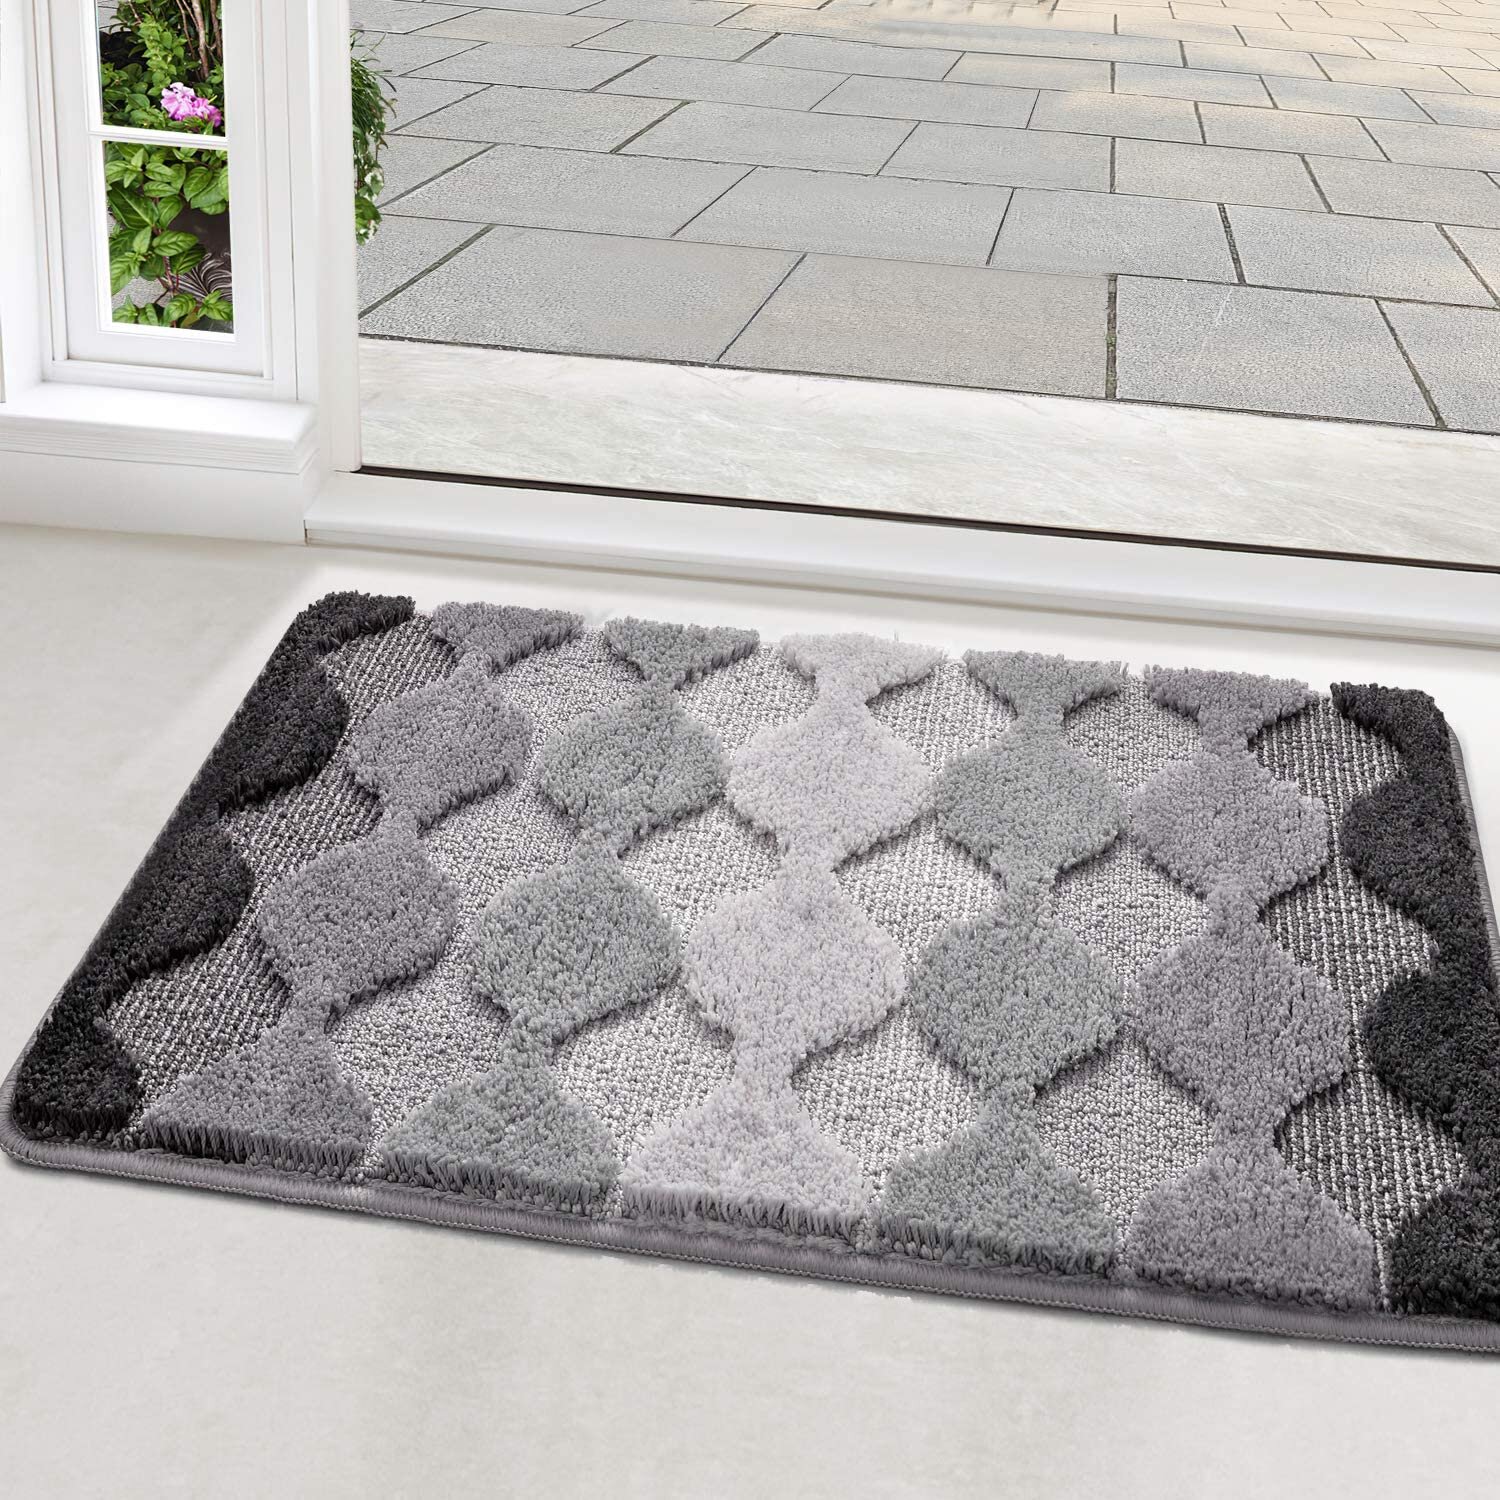 Door Mat Carpet Indoor Super Absorbs Doormat Latex Backing Non Slip Small Inside 